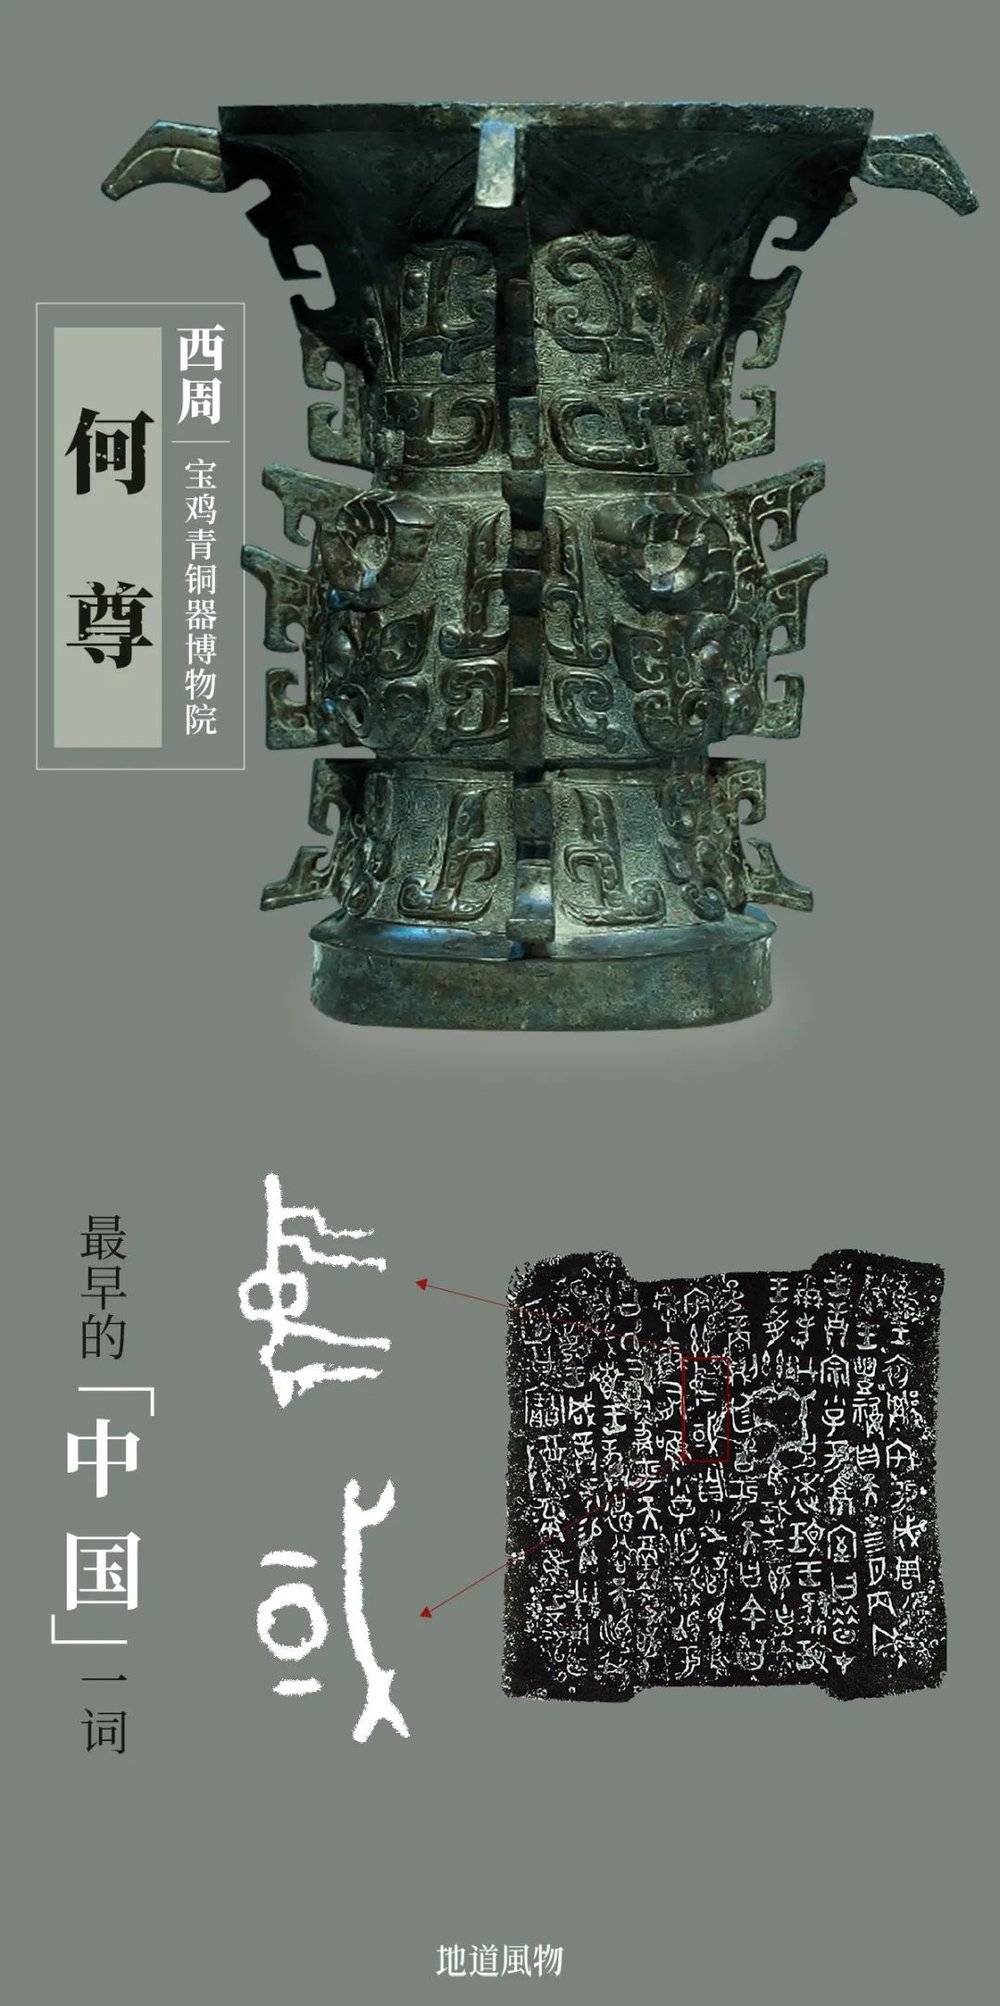 西周何尊，铭文中出现了最早的“中国”一词，宝鸡青铜器博物院藏。摄影/动脉影，制图/吴玖洋